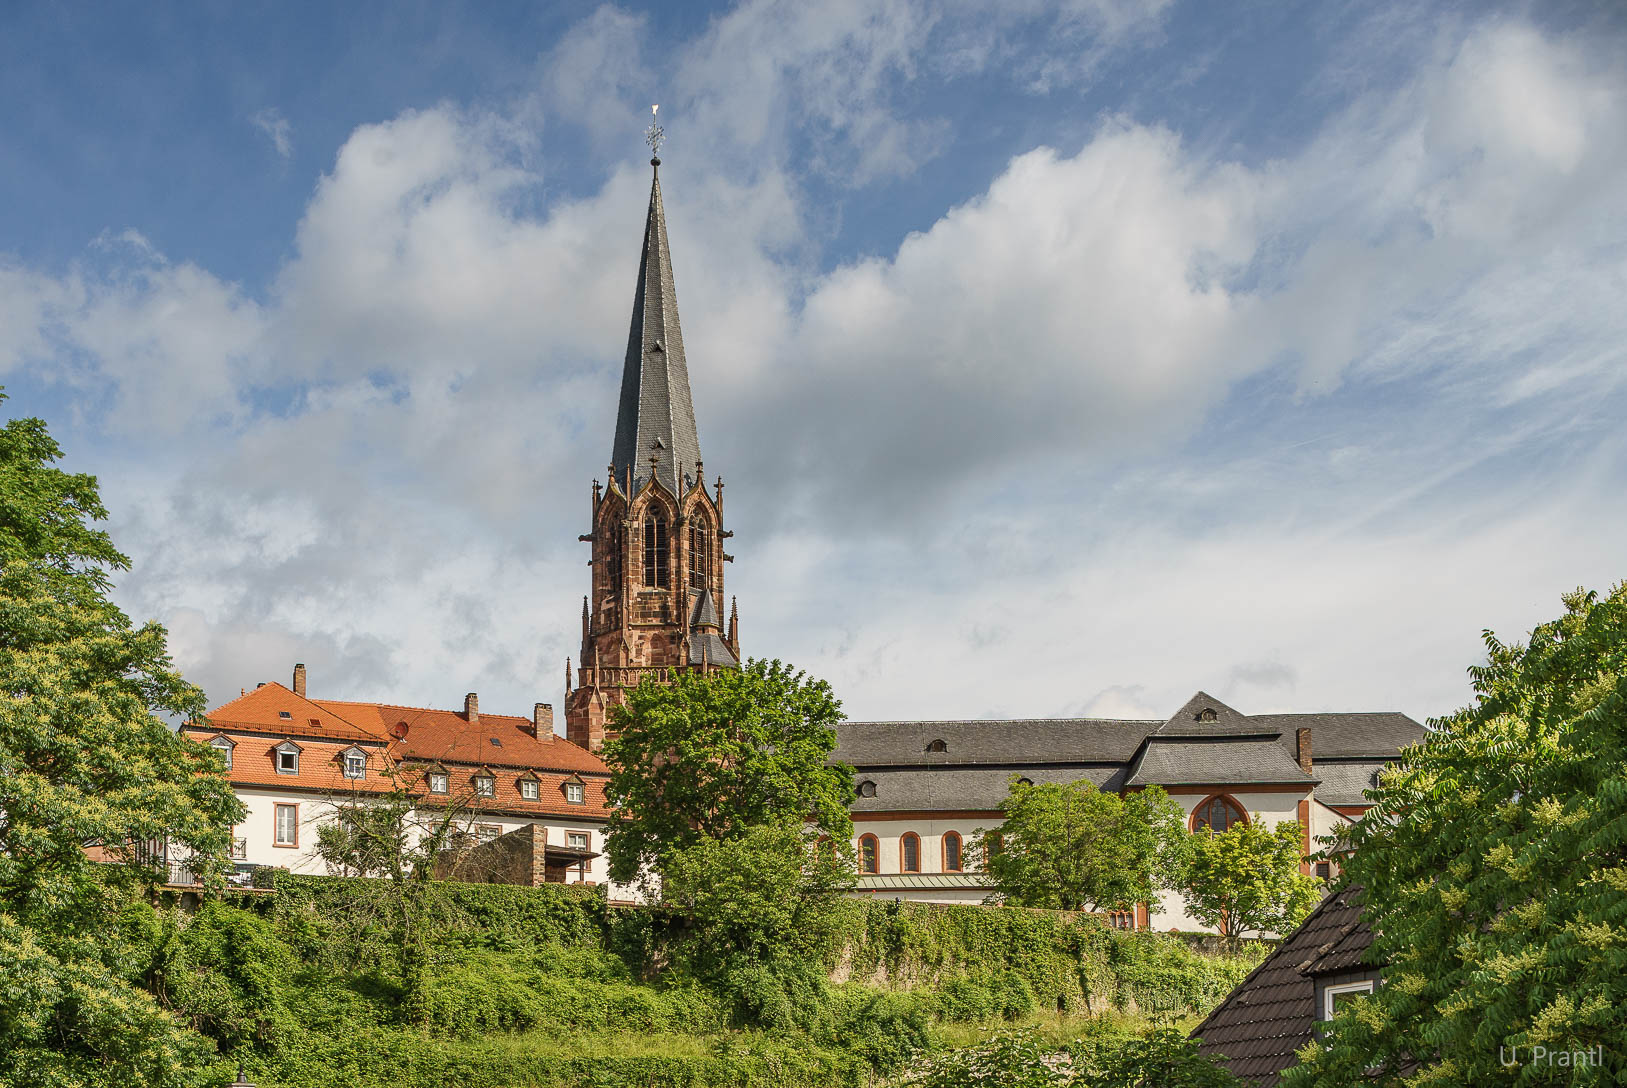 Aschaffenburg Stiftsbasilika St. Peter und Paul